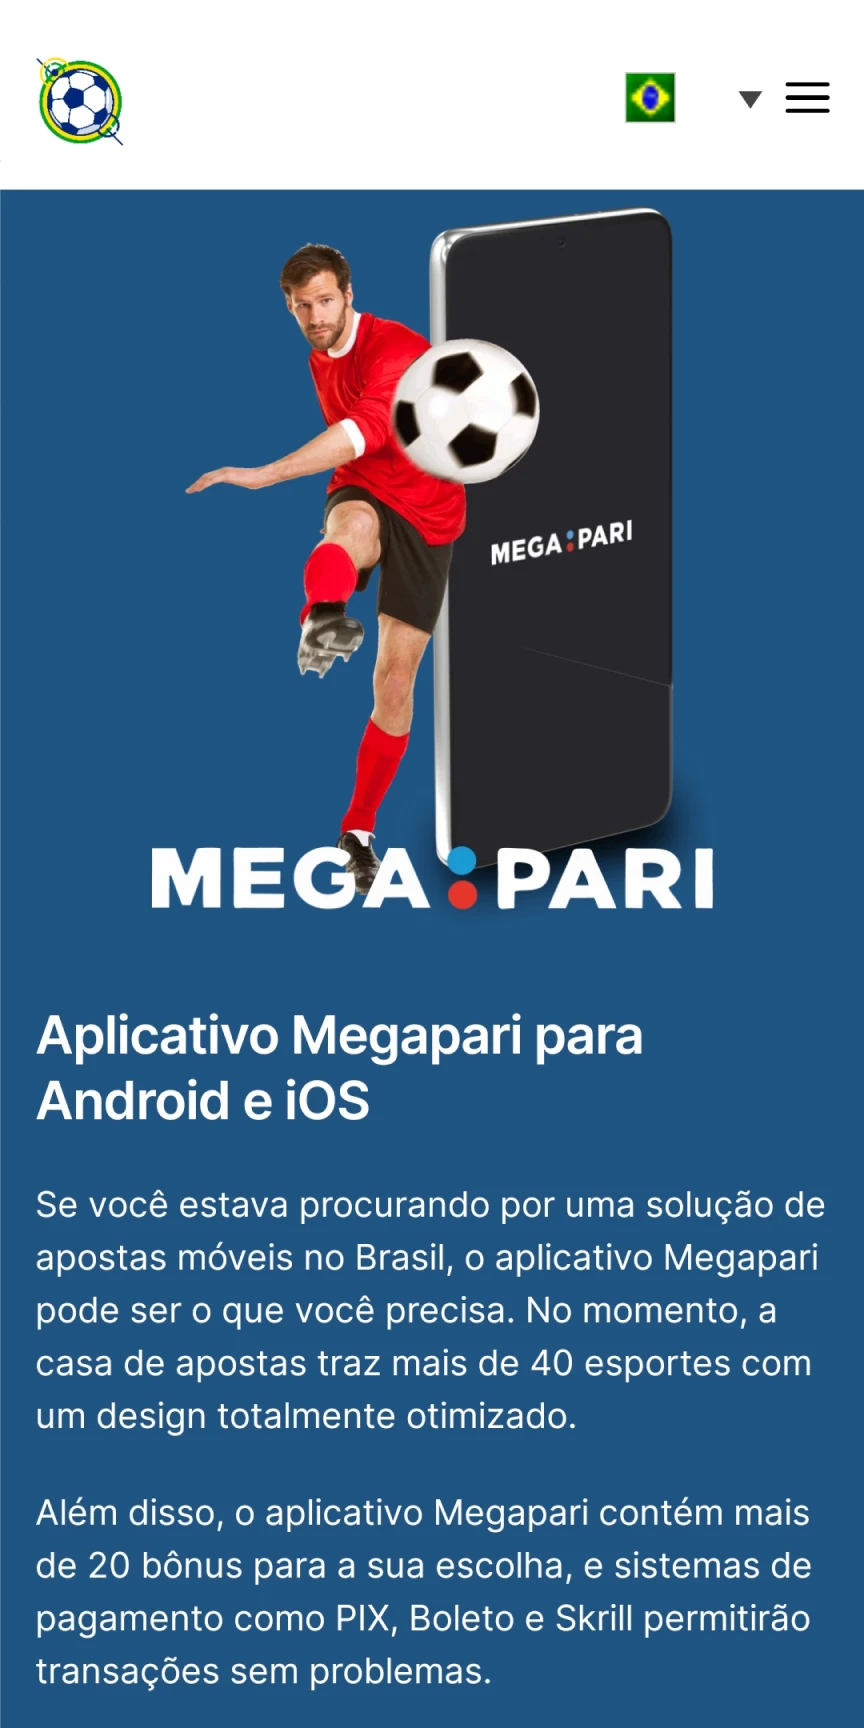 Visite a página inicial do Megapari para baixar aplicativos iOS.